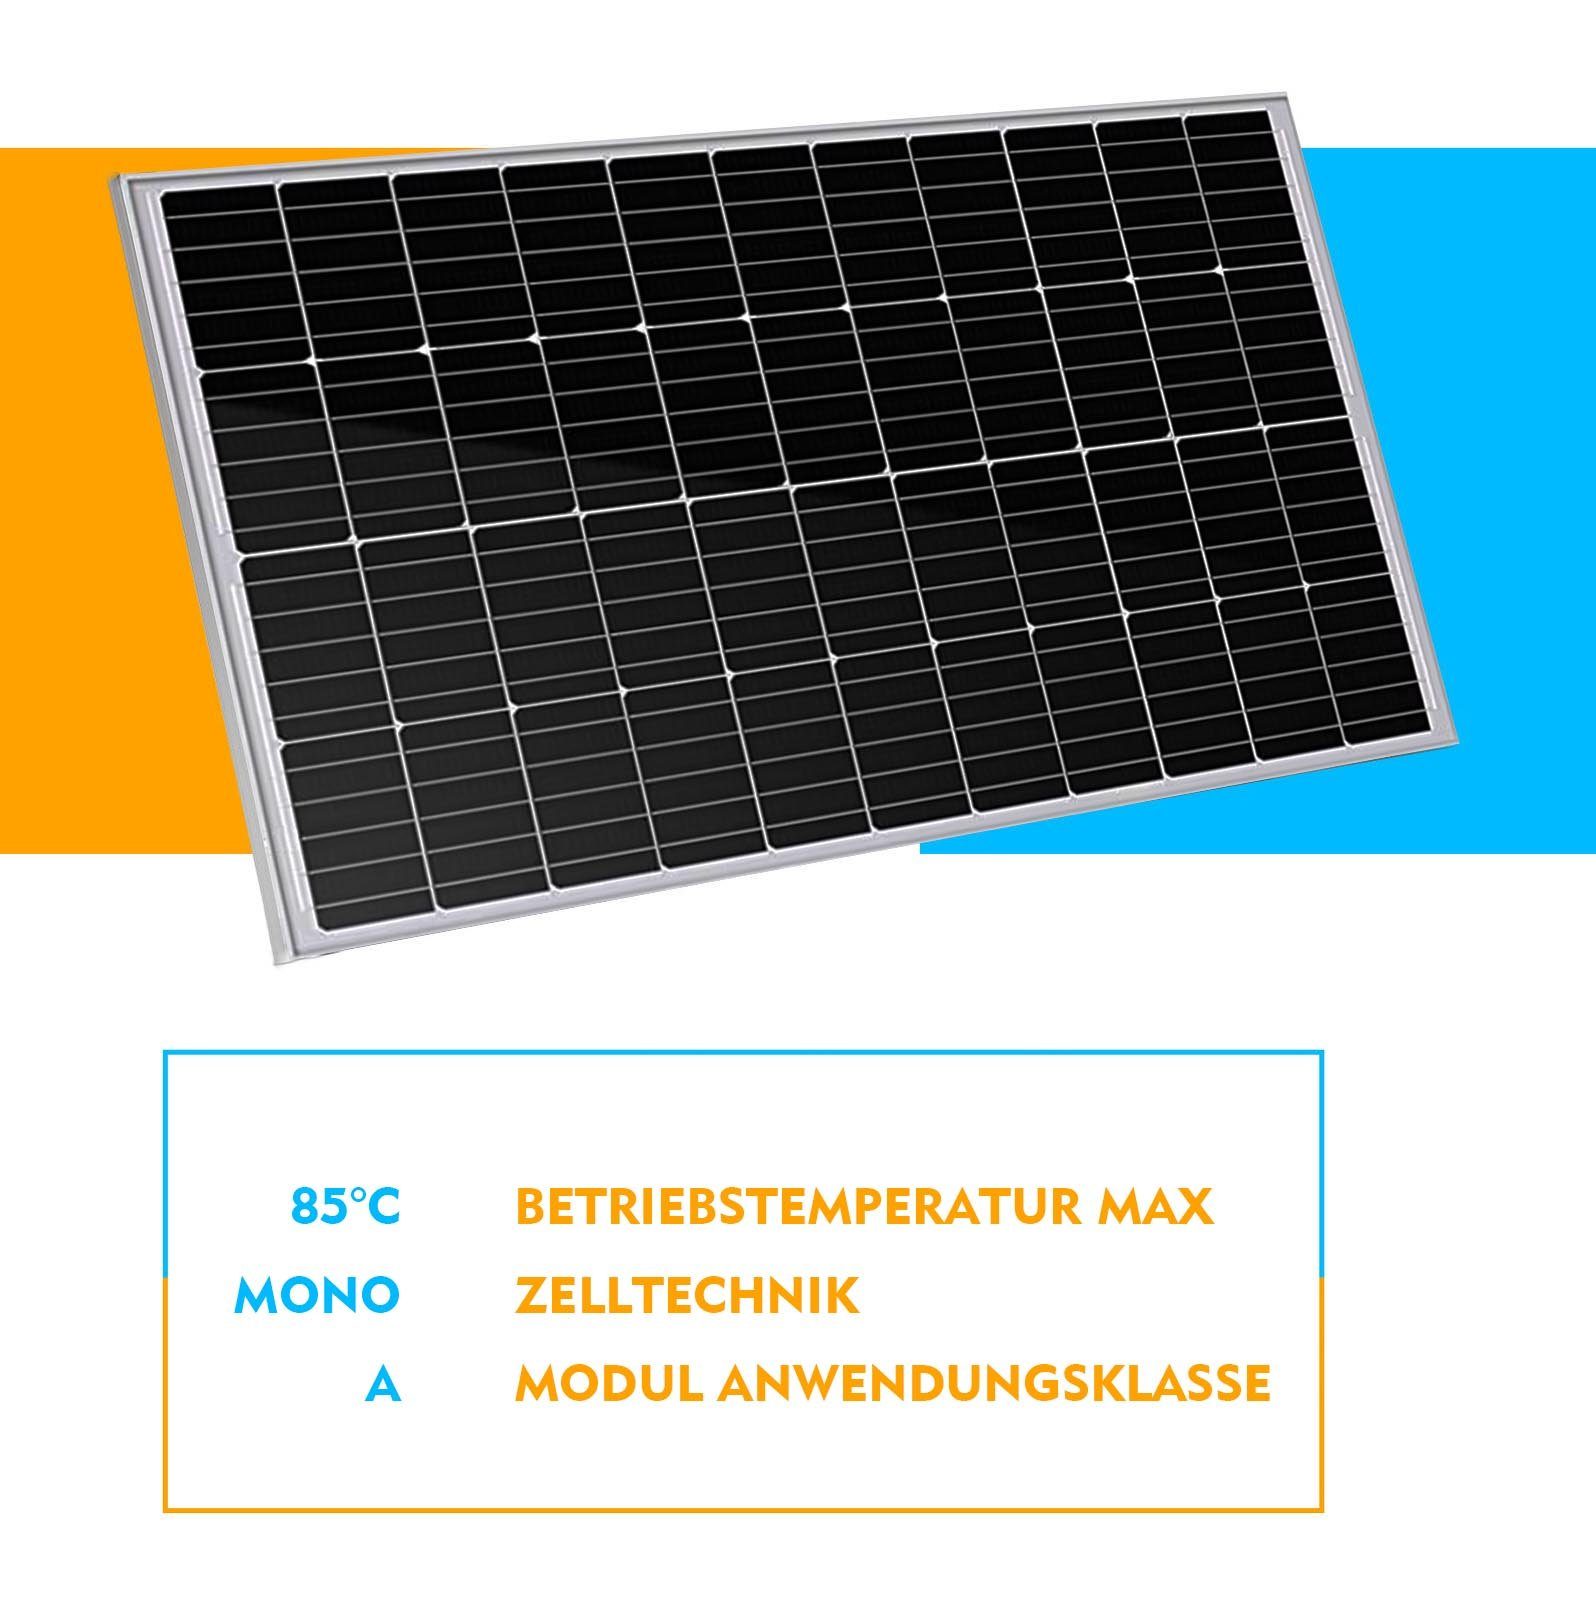 150W Solarpanel Solarmodul GLIESE Monokristallines